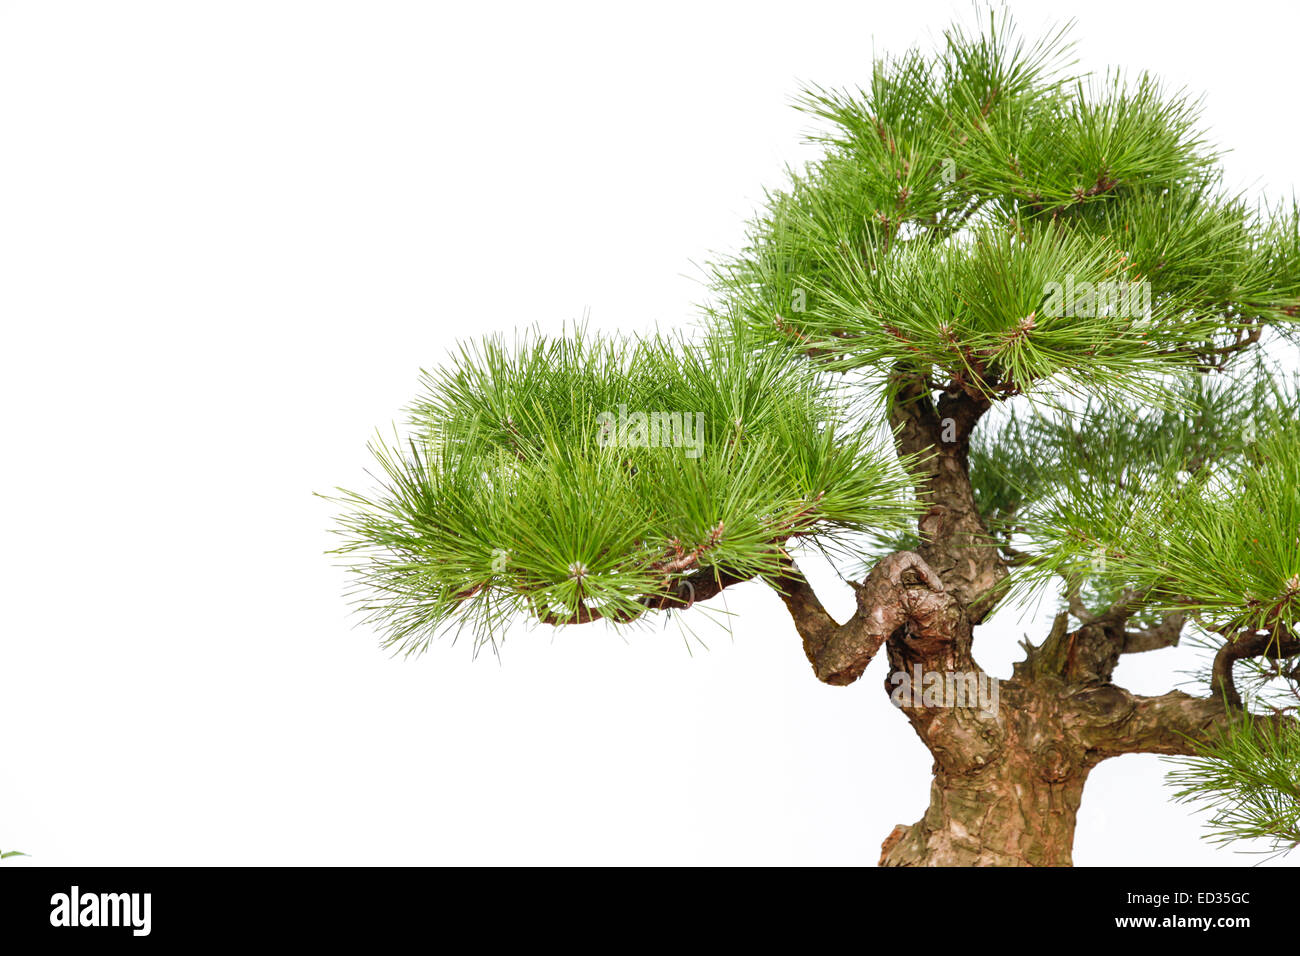 Dettaglio di un piccolo albero di bonsai. Isolato su uno sfondo bianco. Foto Stock